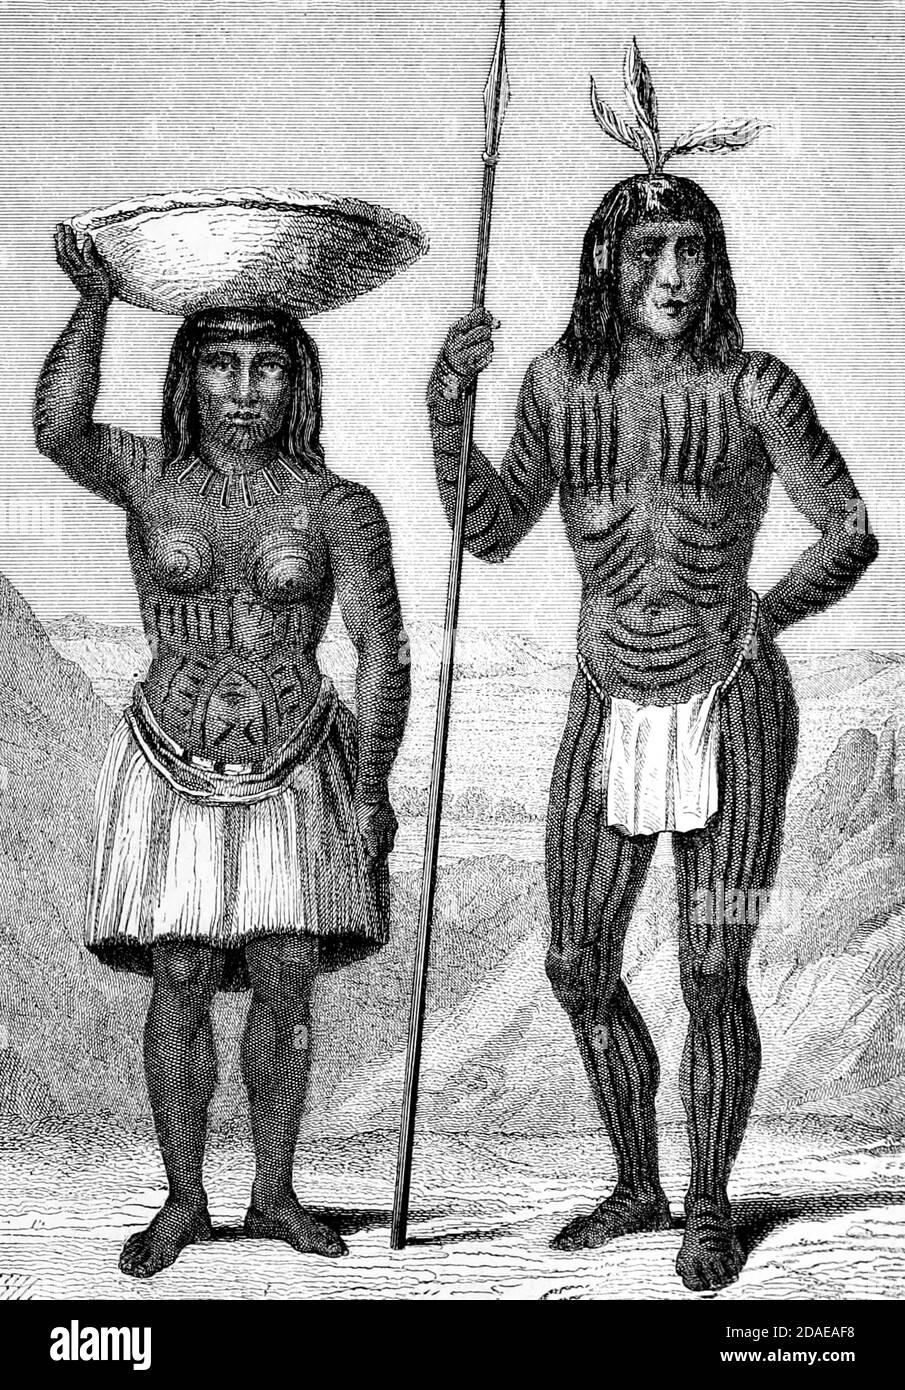 Gli indiani Mohawk maschili e femminili che incisi sul legno della razza umana di Figuier, Louis, (1819-1894) Pubblicazione nel 1872 Editore: New York, Appleton Foto Stock